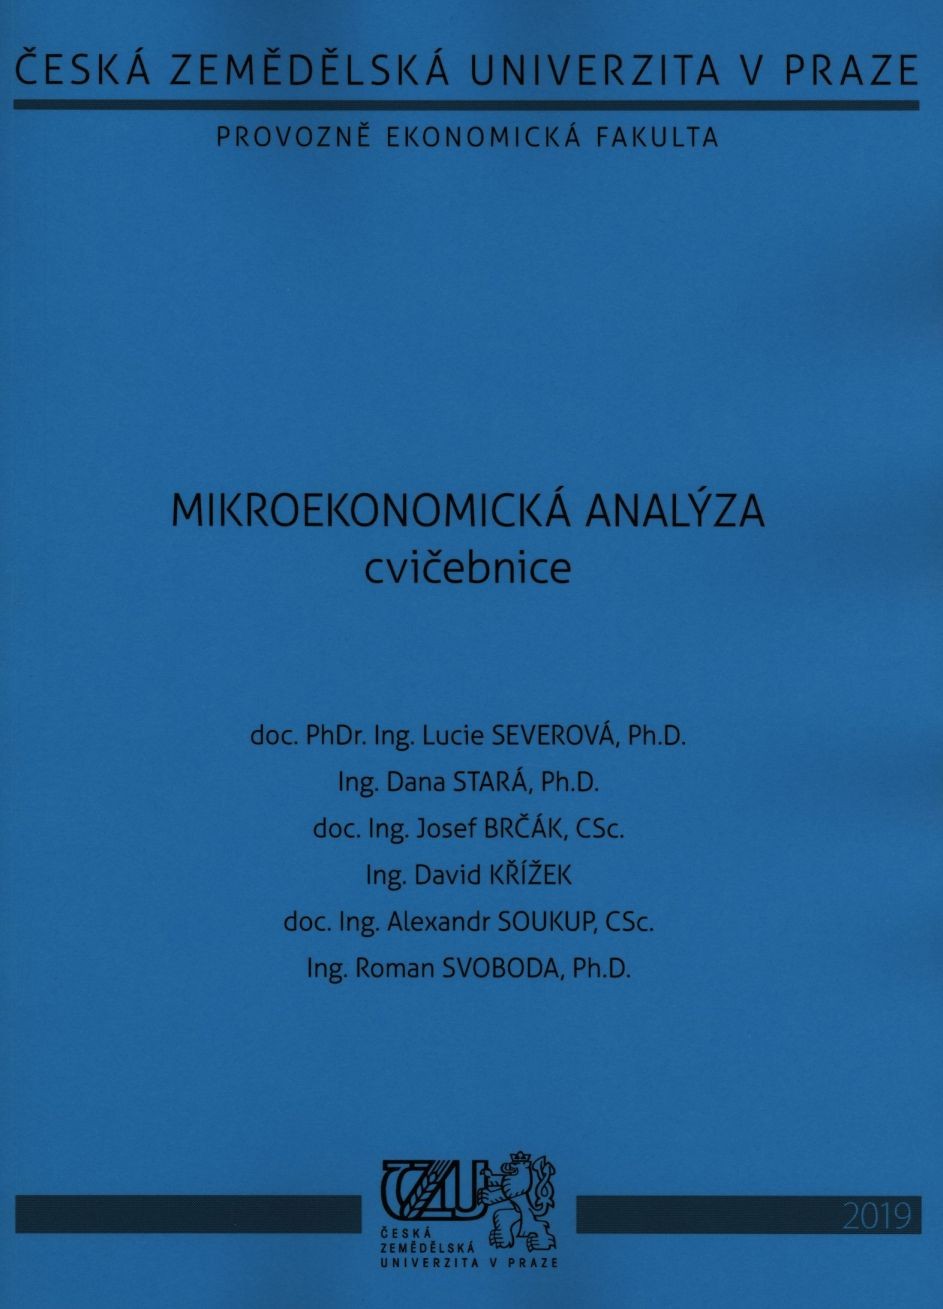 Mikroekonomická analýza - cvičebnice